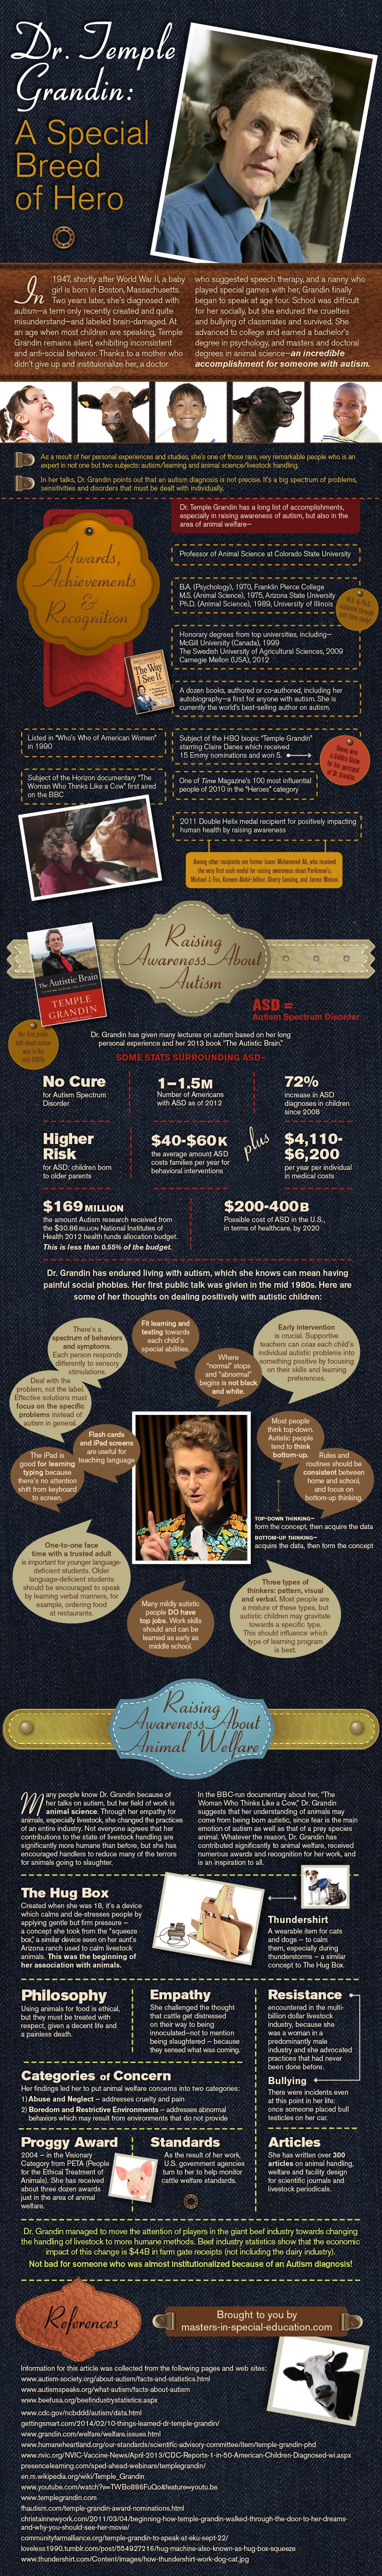 Temple Grandin Accomplishments